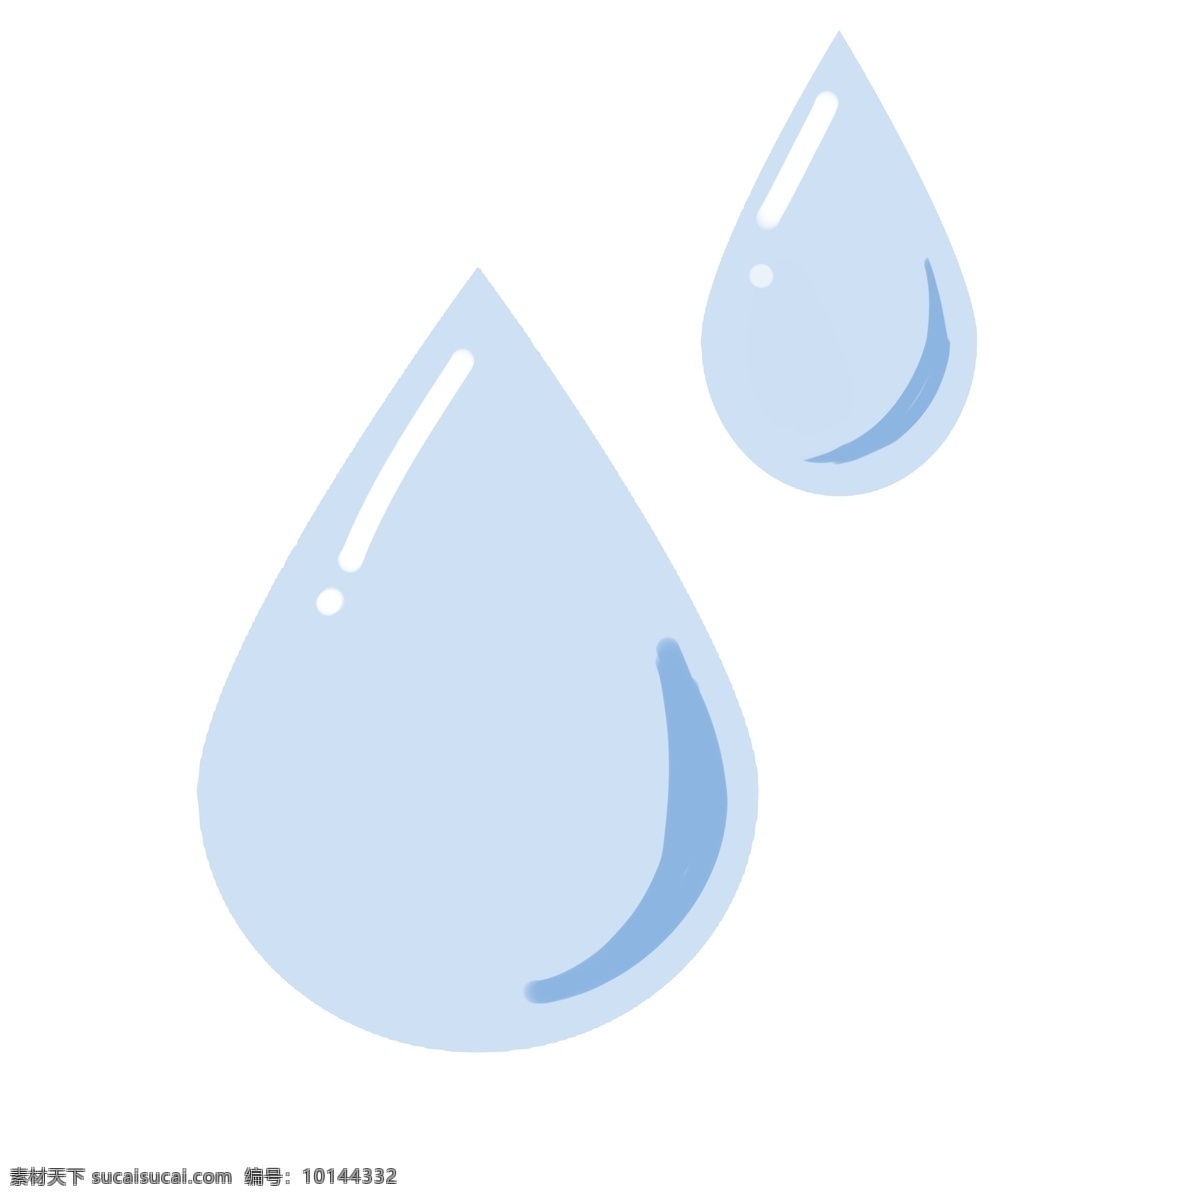 蓝色 雨滴 装饰 图标 矢量图案 扁平化 卡通有趣 小雨滴 阴天 小雨